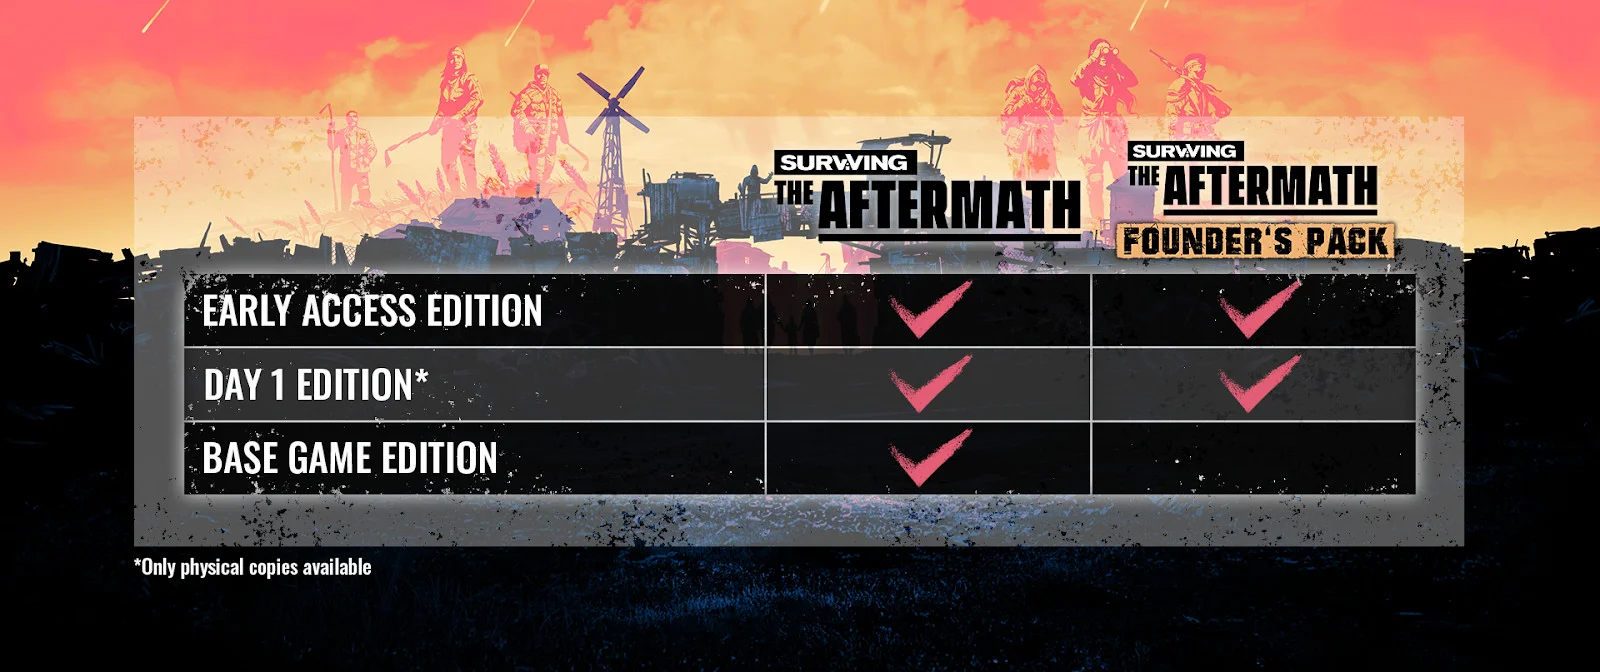 Стратегия Surviving the Aftermath покинет ранний доступ 16 ноября - фото 1